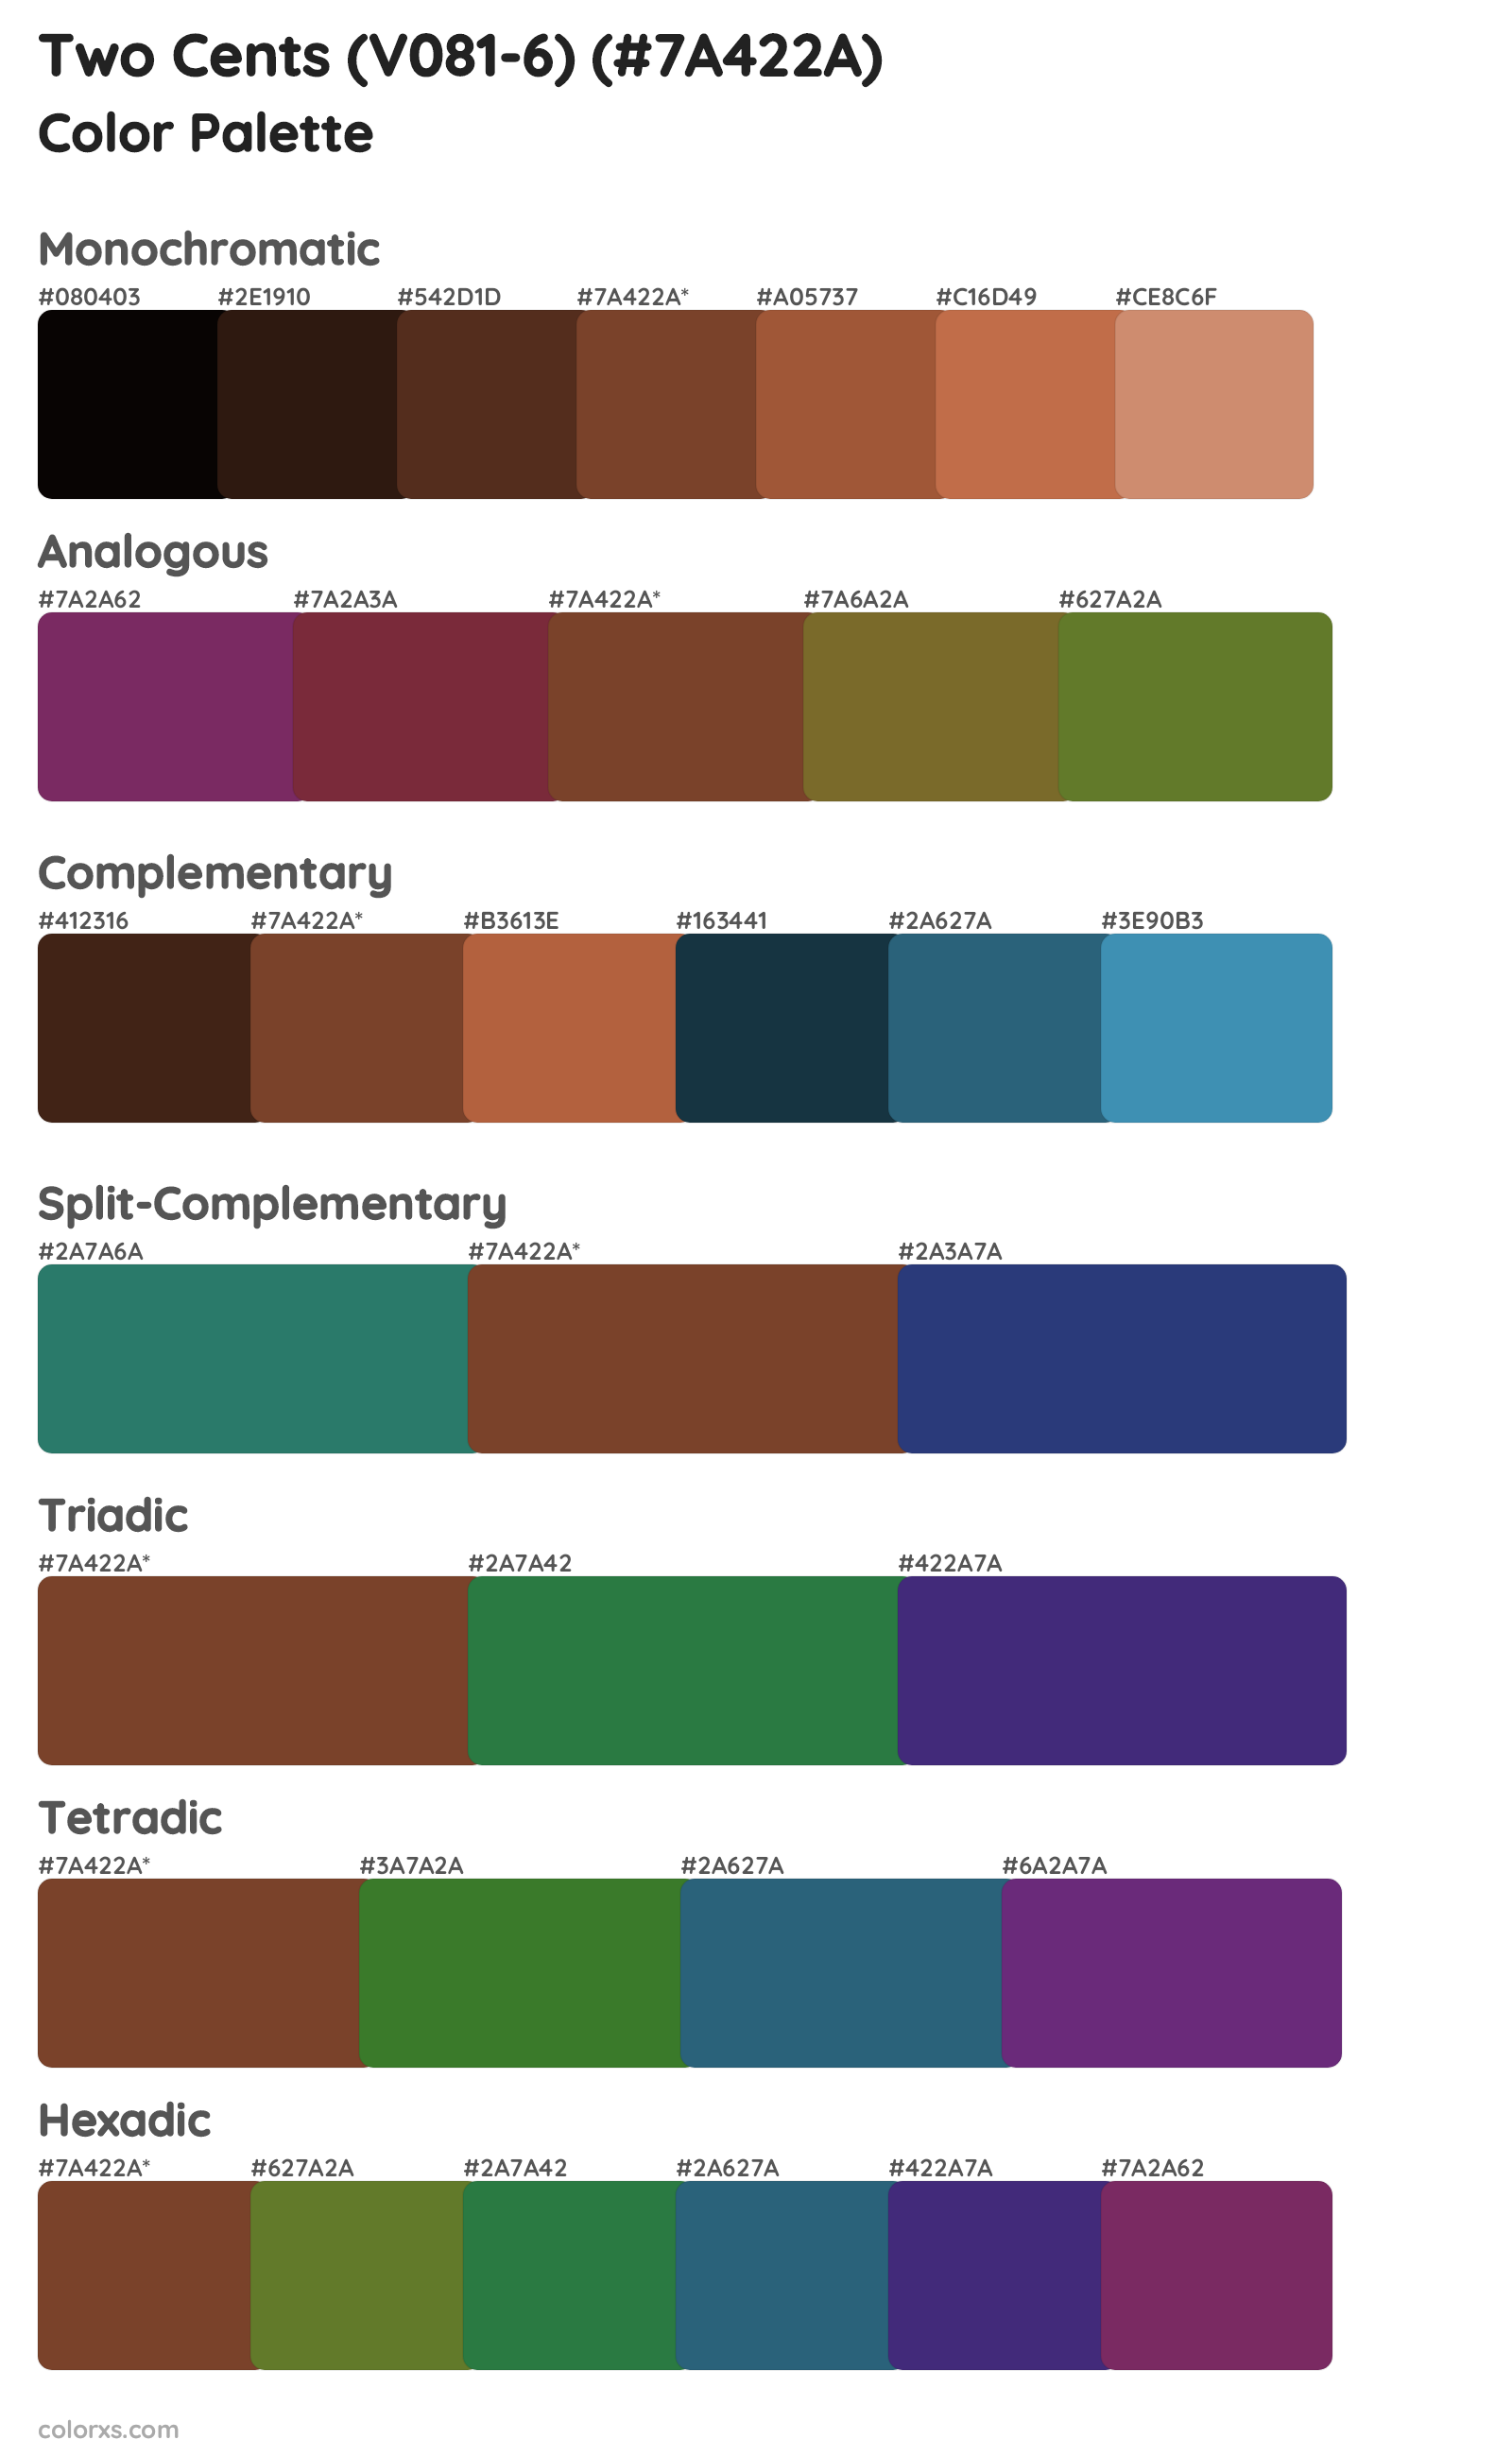 Two Cents (V081-6) Color Scheme Palettes